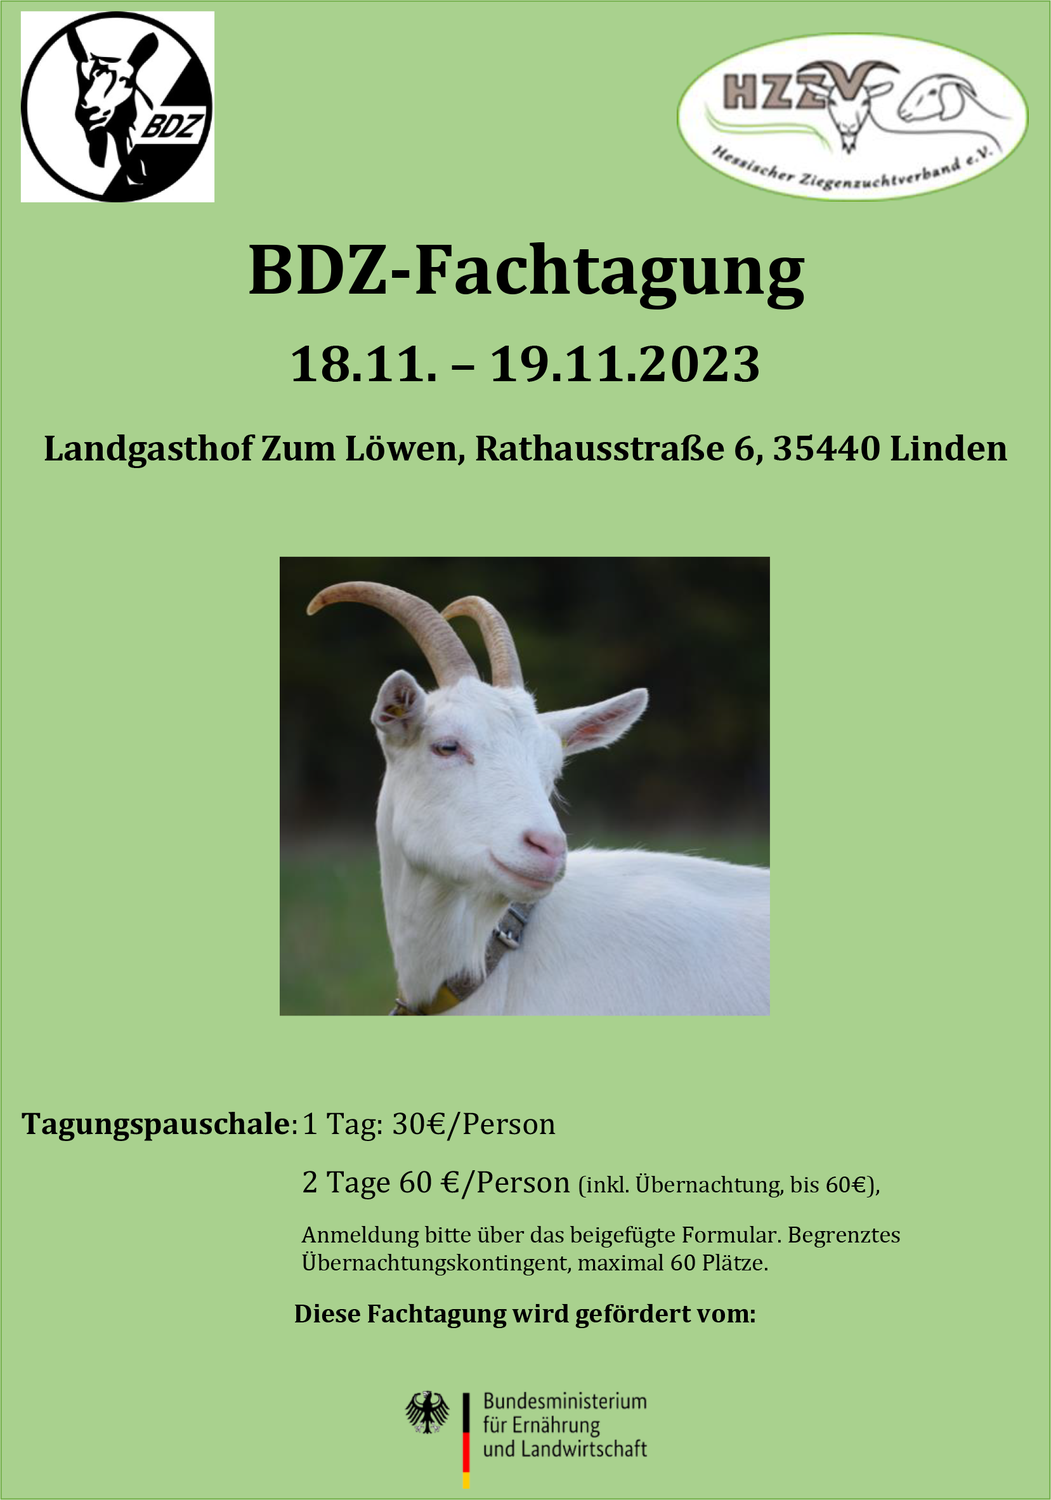 BDZ-Fachtagung 2023 in Linden (Hessen)